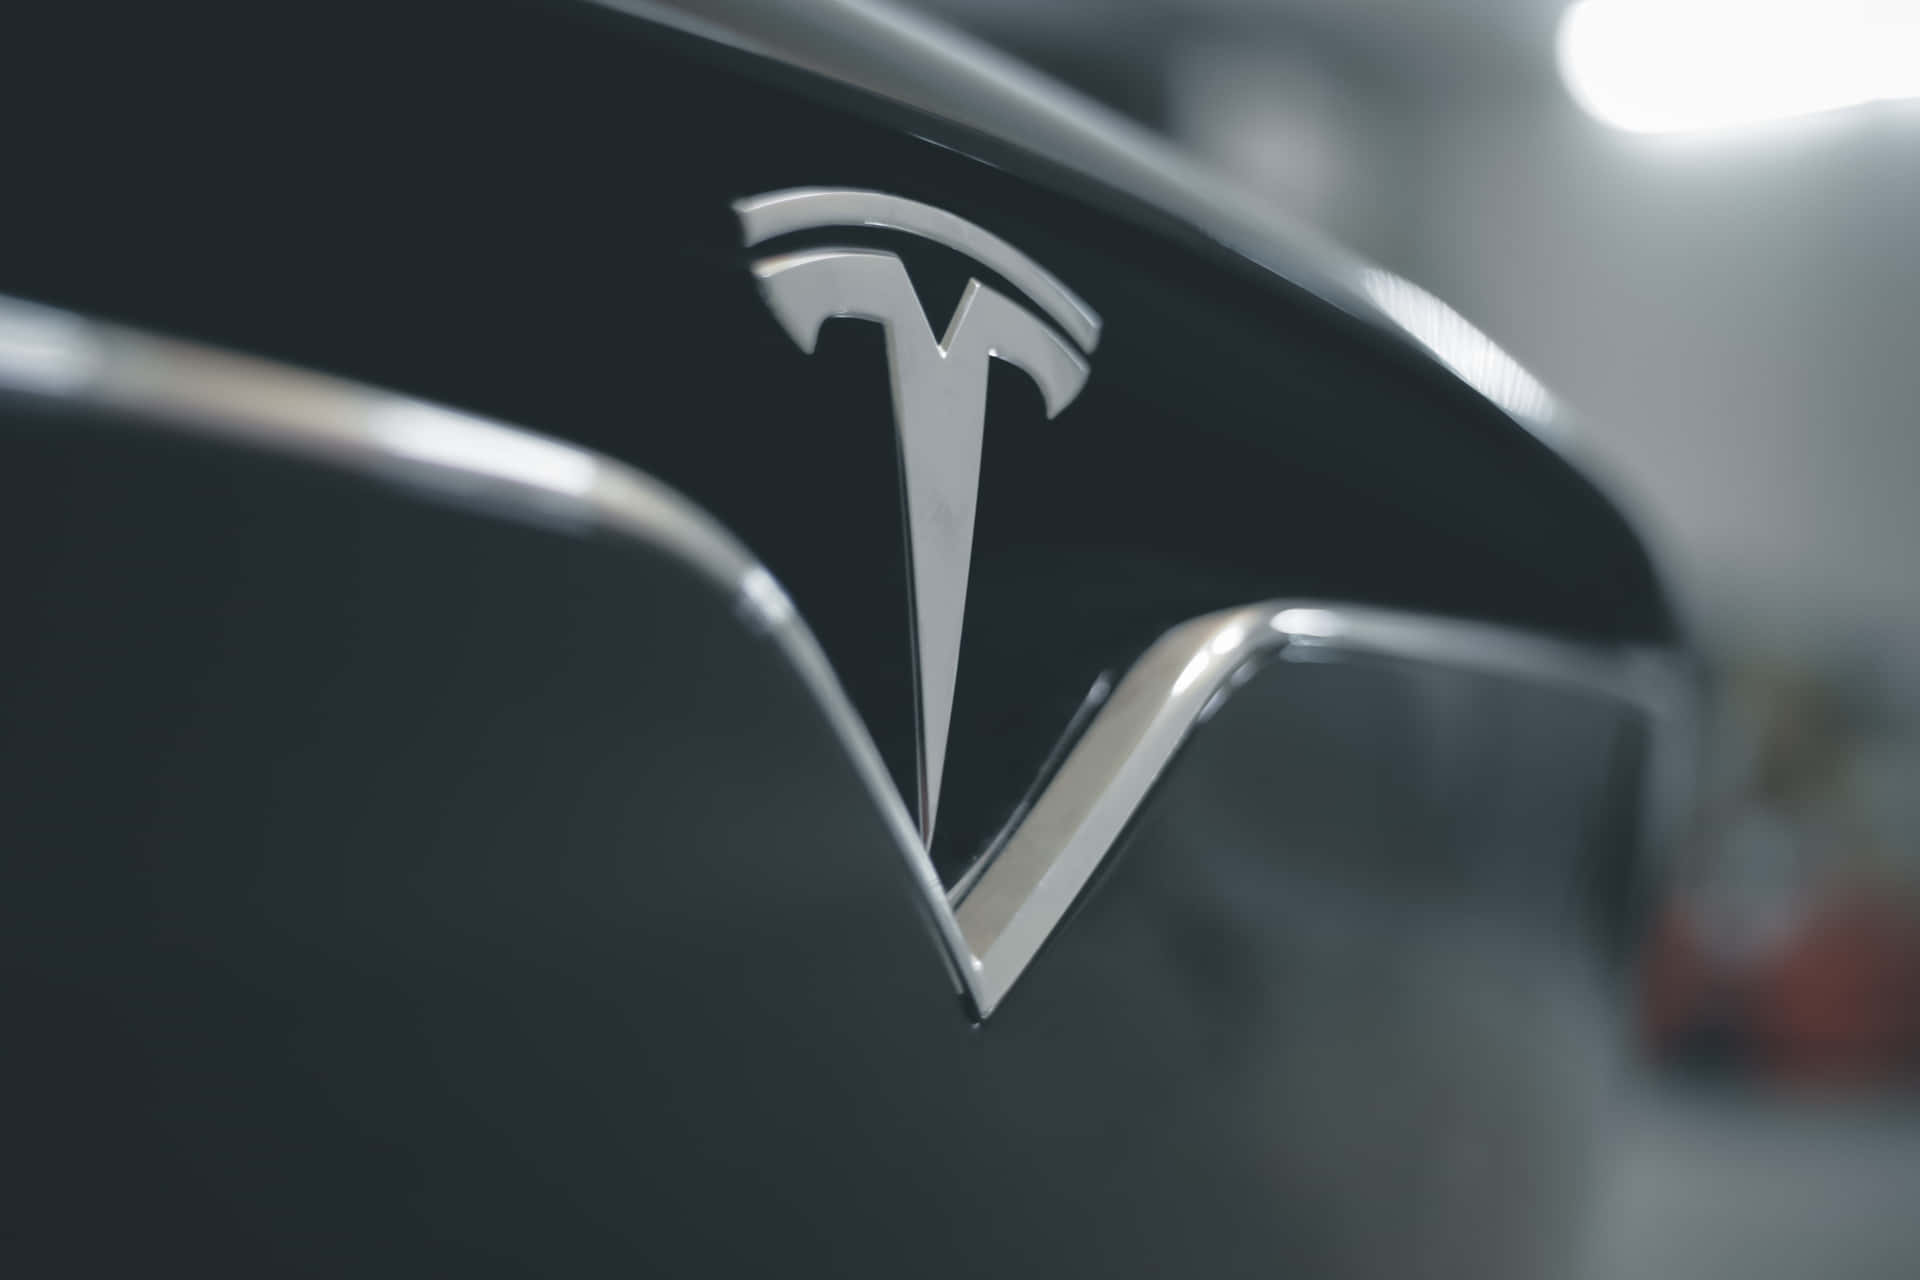 Logoet for den teknologiske bilfirma Tesla i 4K opløsning. Wallpaper